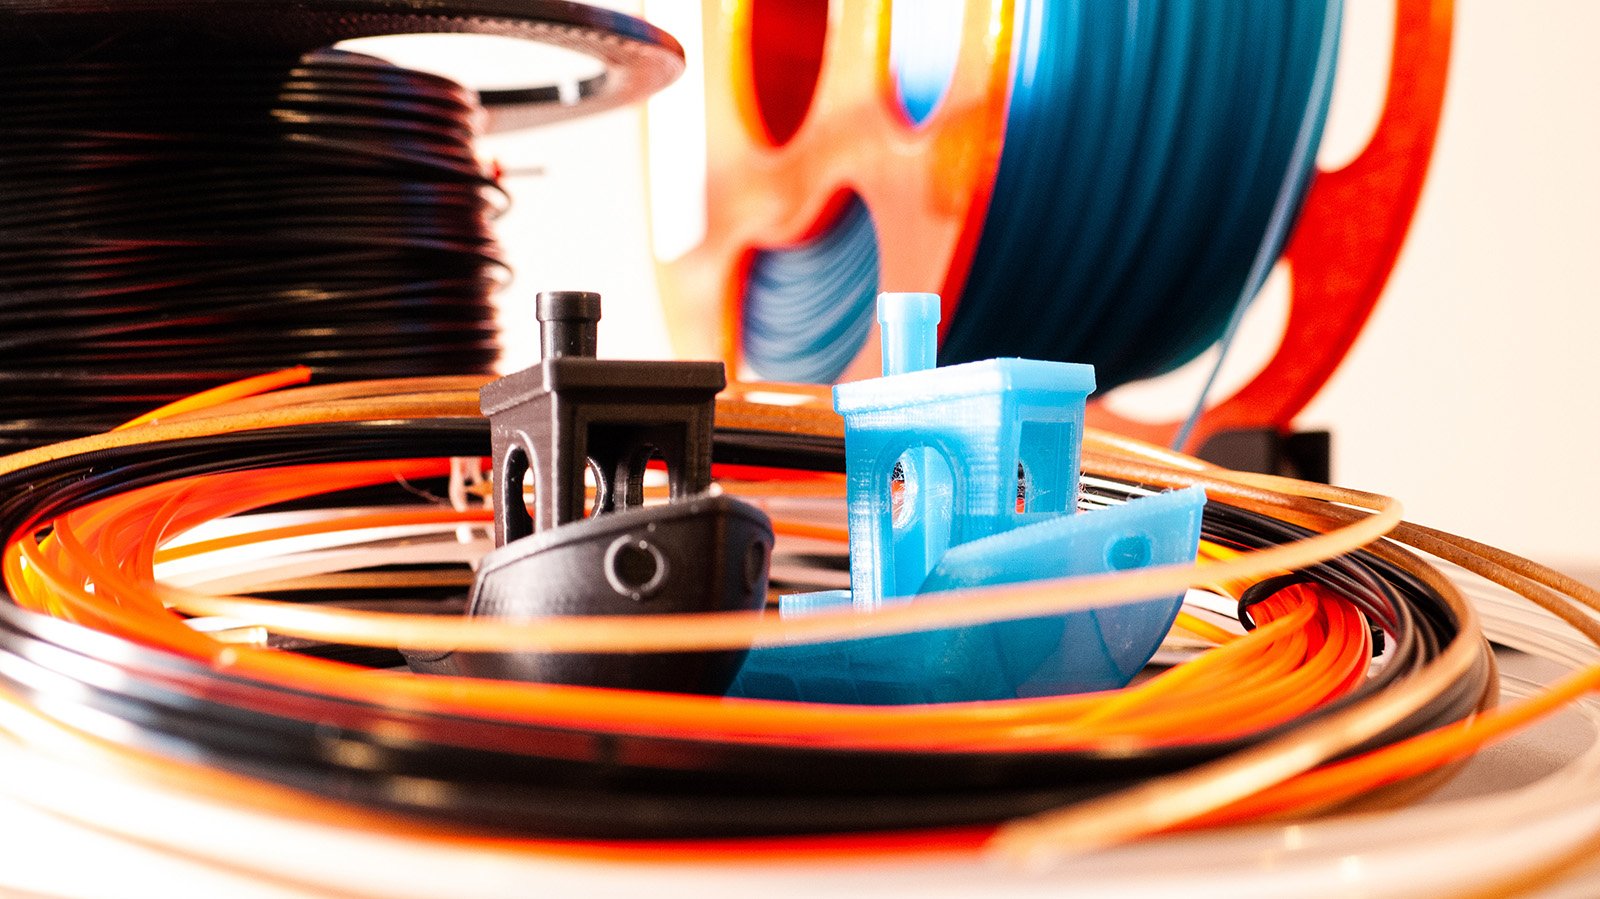 AMOLEN Ensemble de Filaments en Bois pour Imprimante 3D, Filament